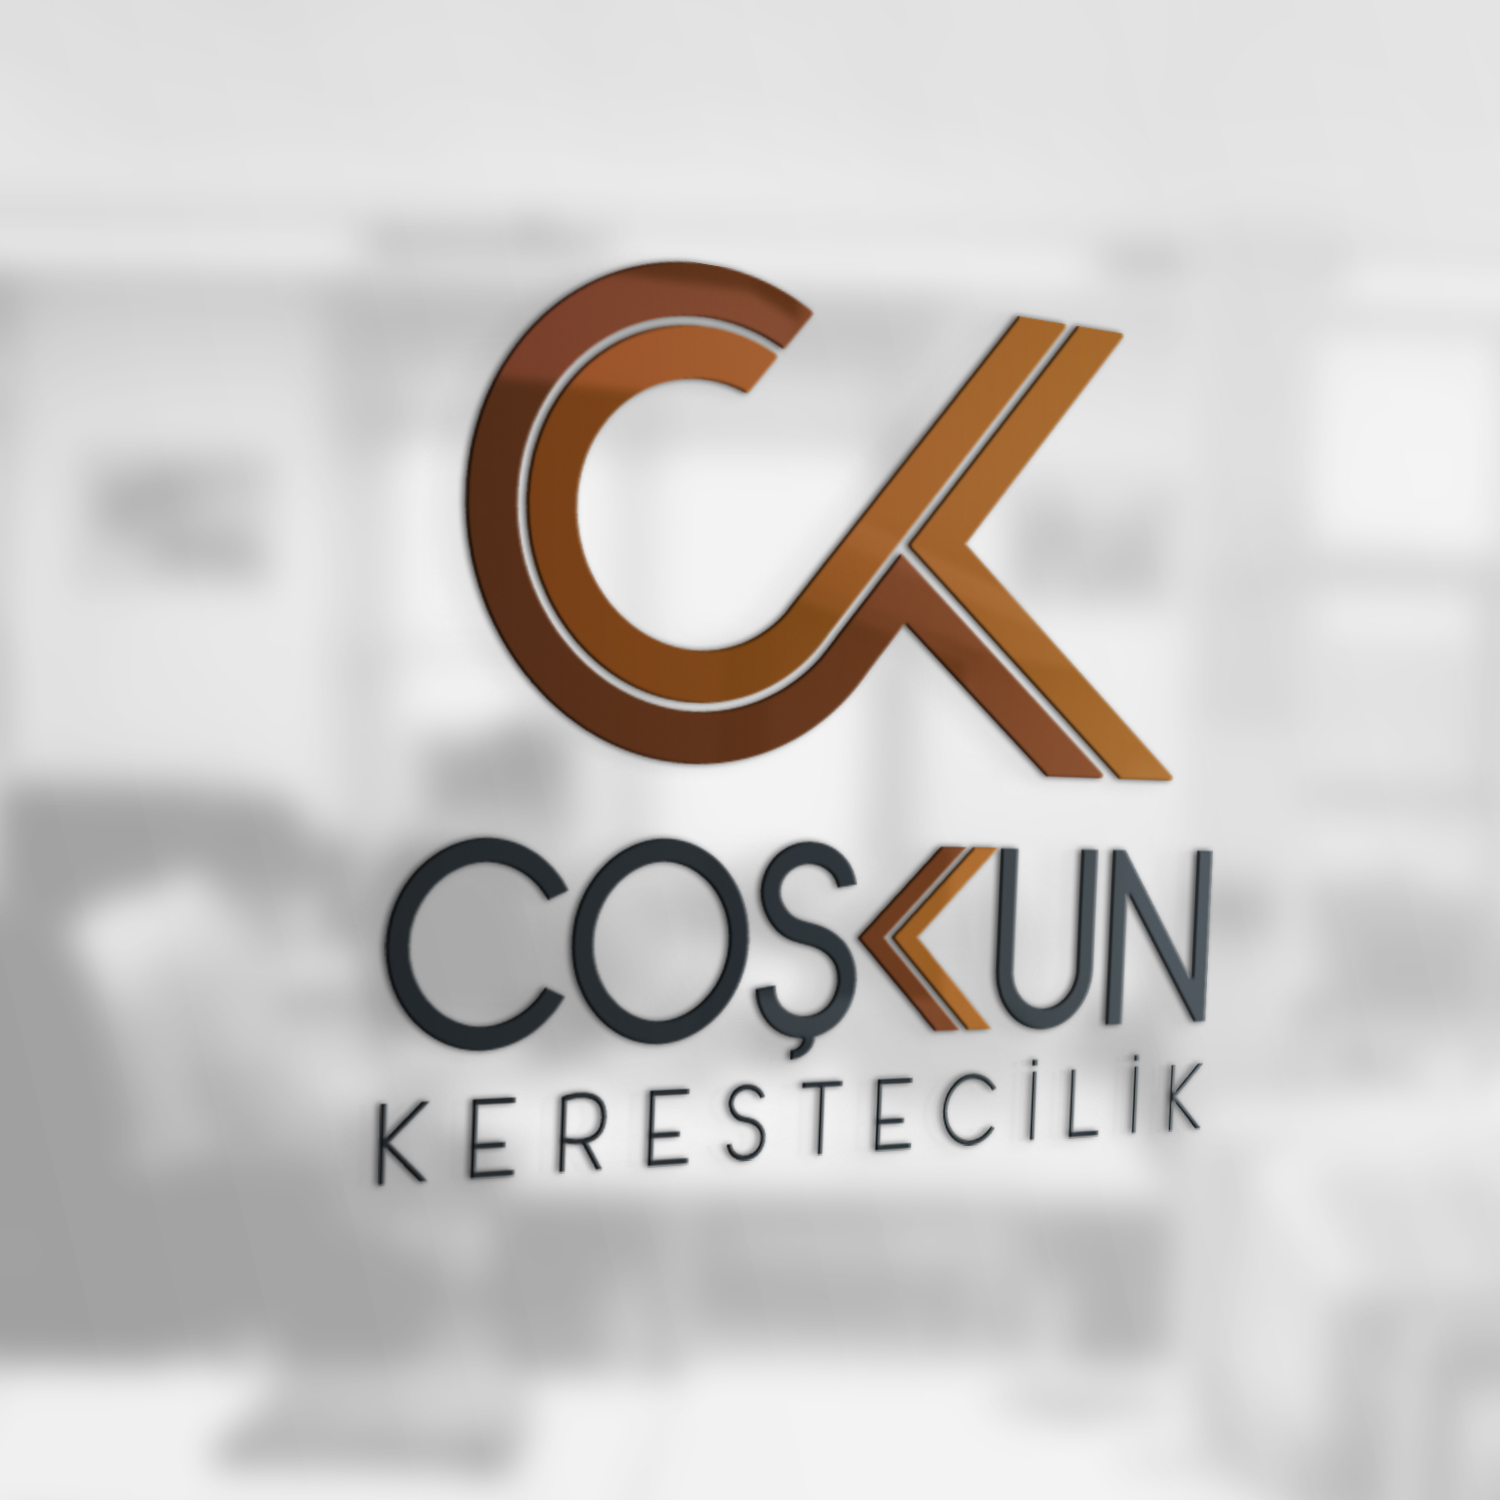 COŞKUN KERESTECİLİK logo